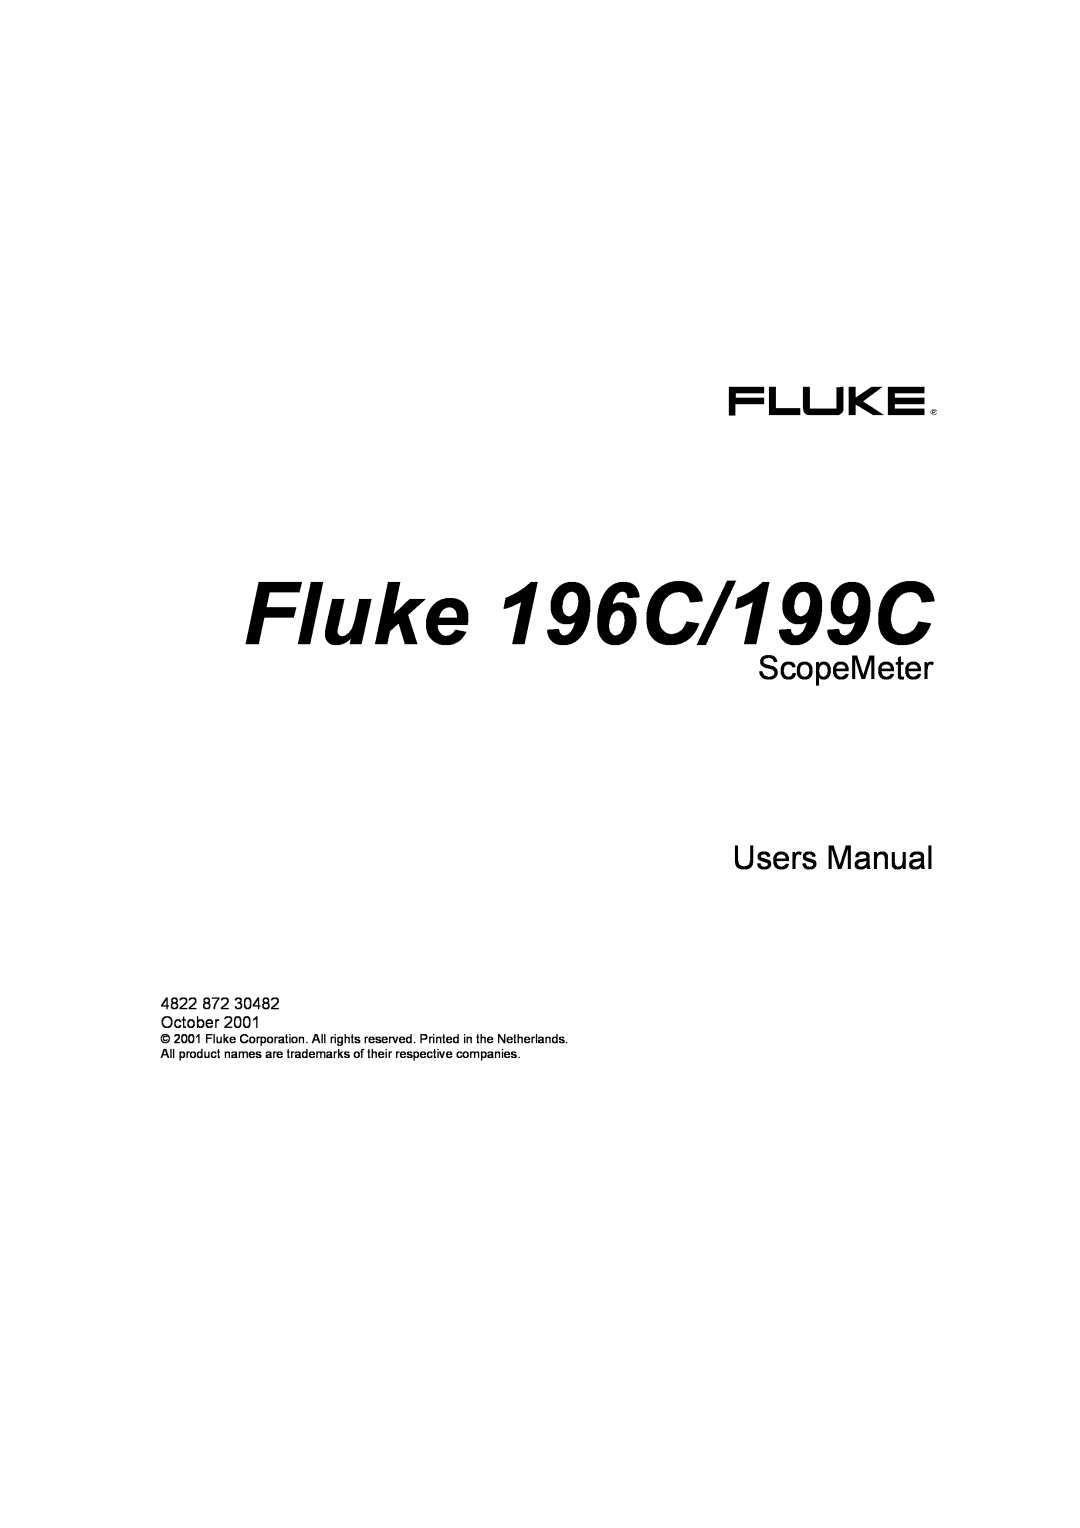 Fluke user manual Fluke 196C/199C 